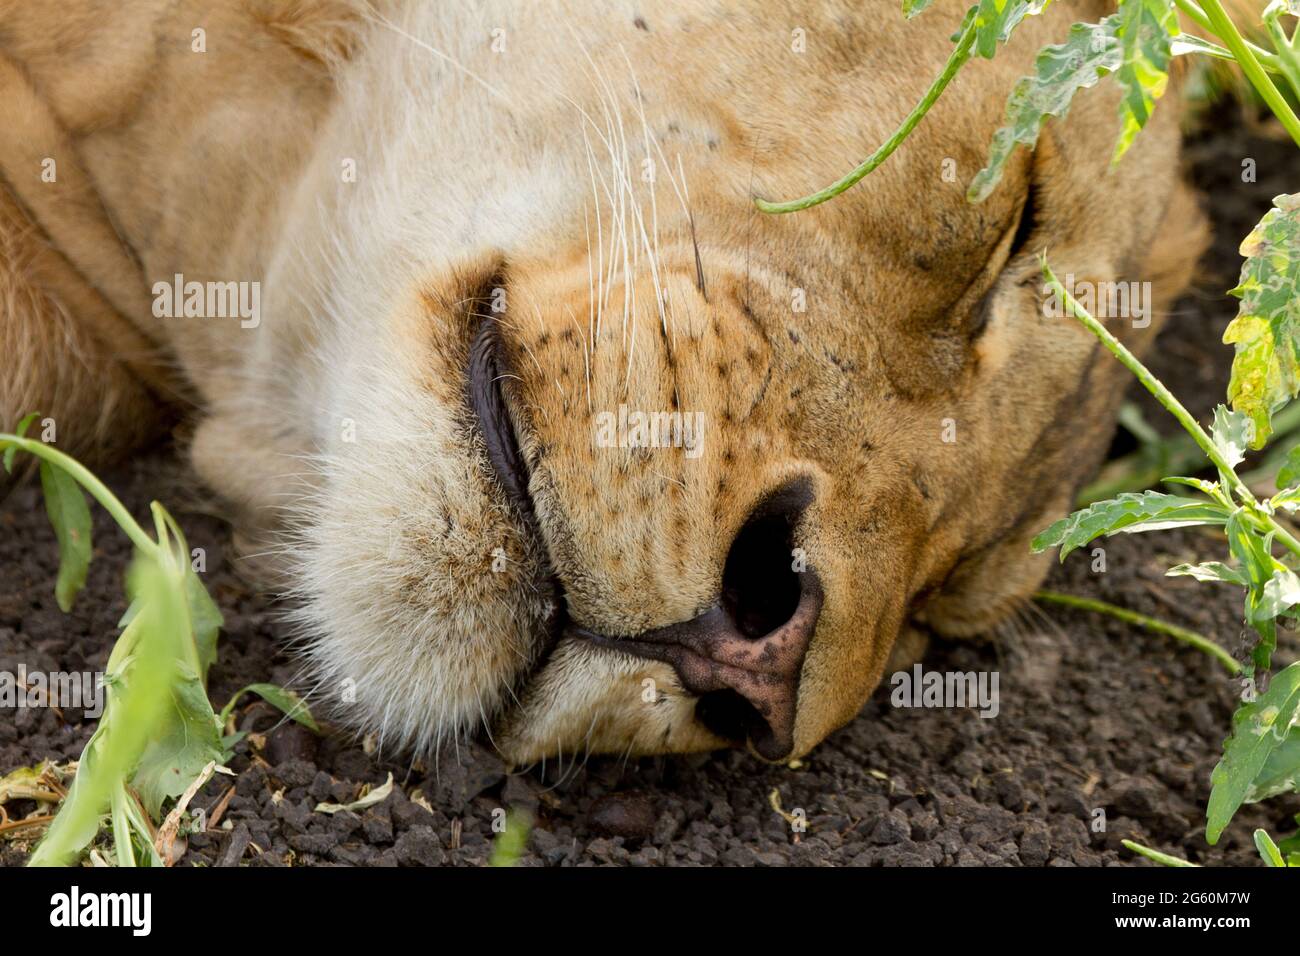 Eine Nahaufnahme der Nase und des Mundes eines männlichen Löwen, während er schläft. Stockfoto